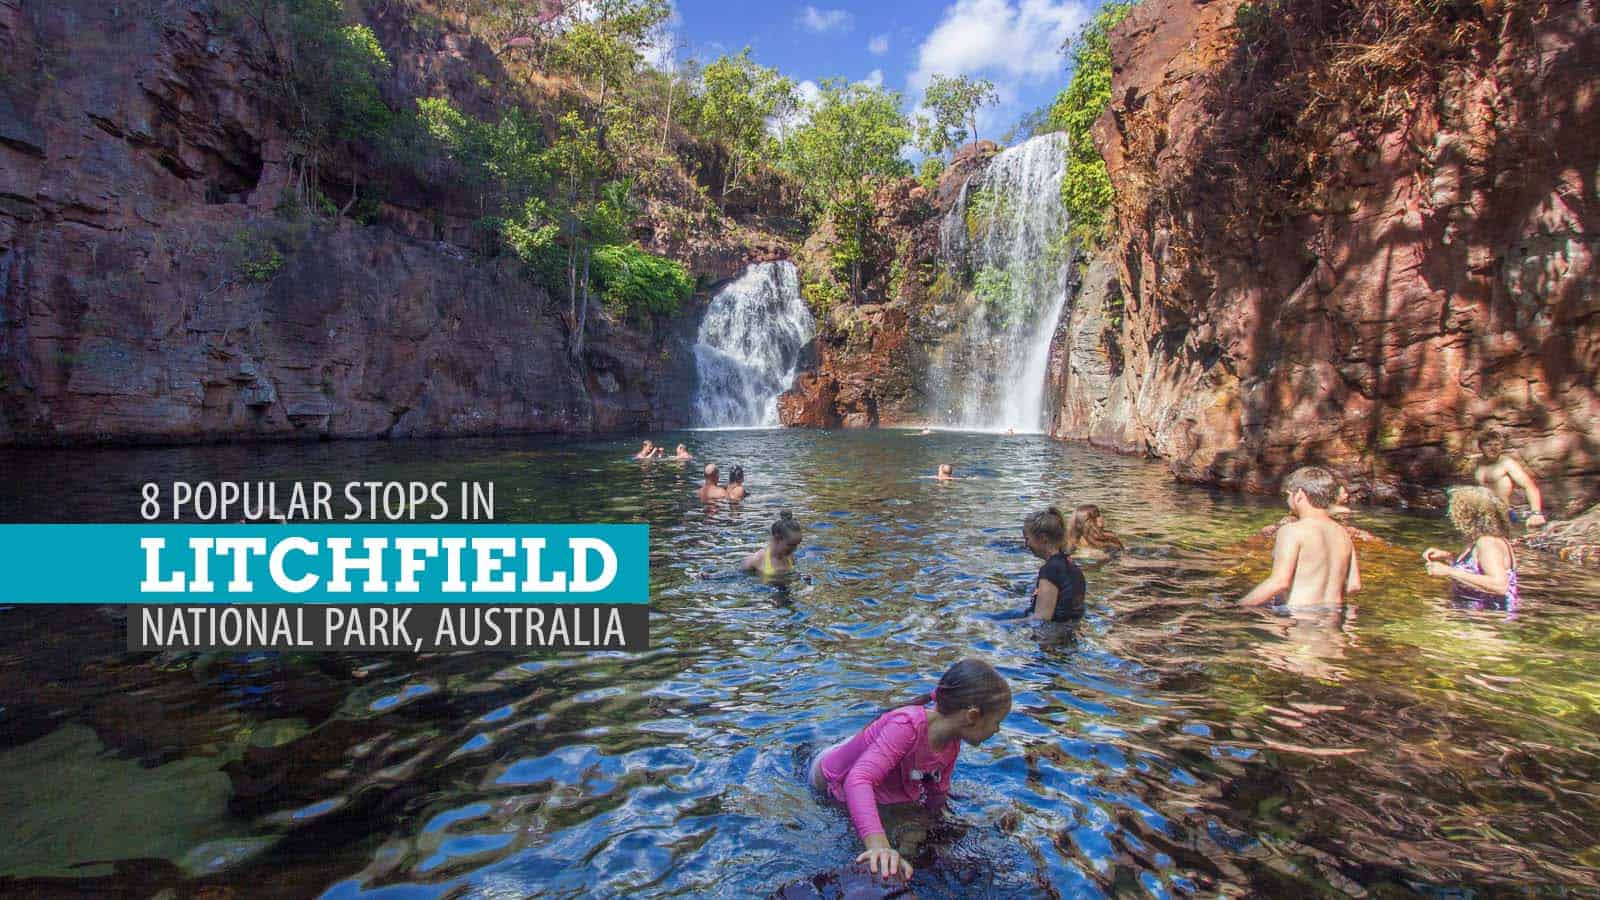 澳大利亚利奇菲尔德国家公园的8个热门景点:一日游行程